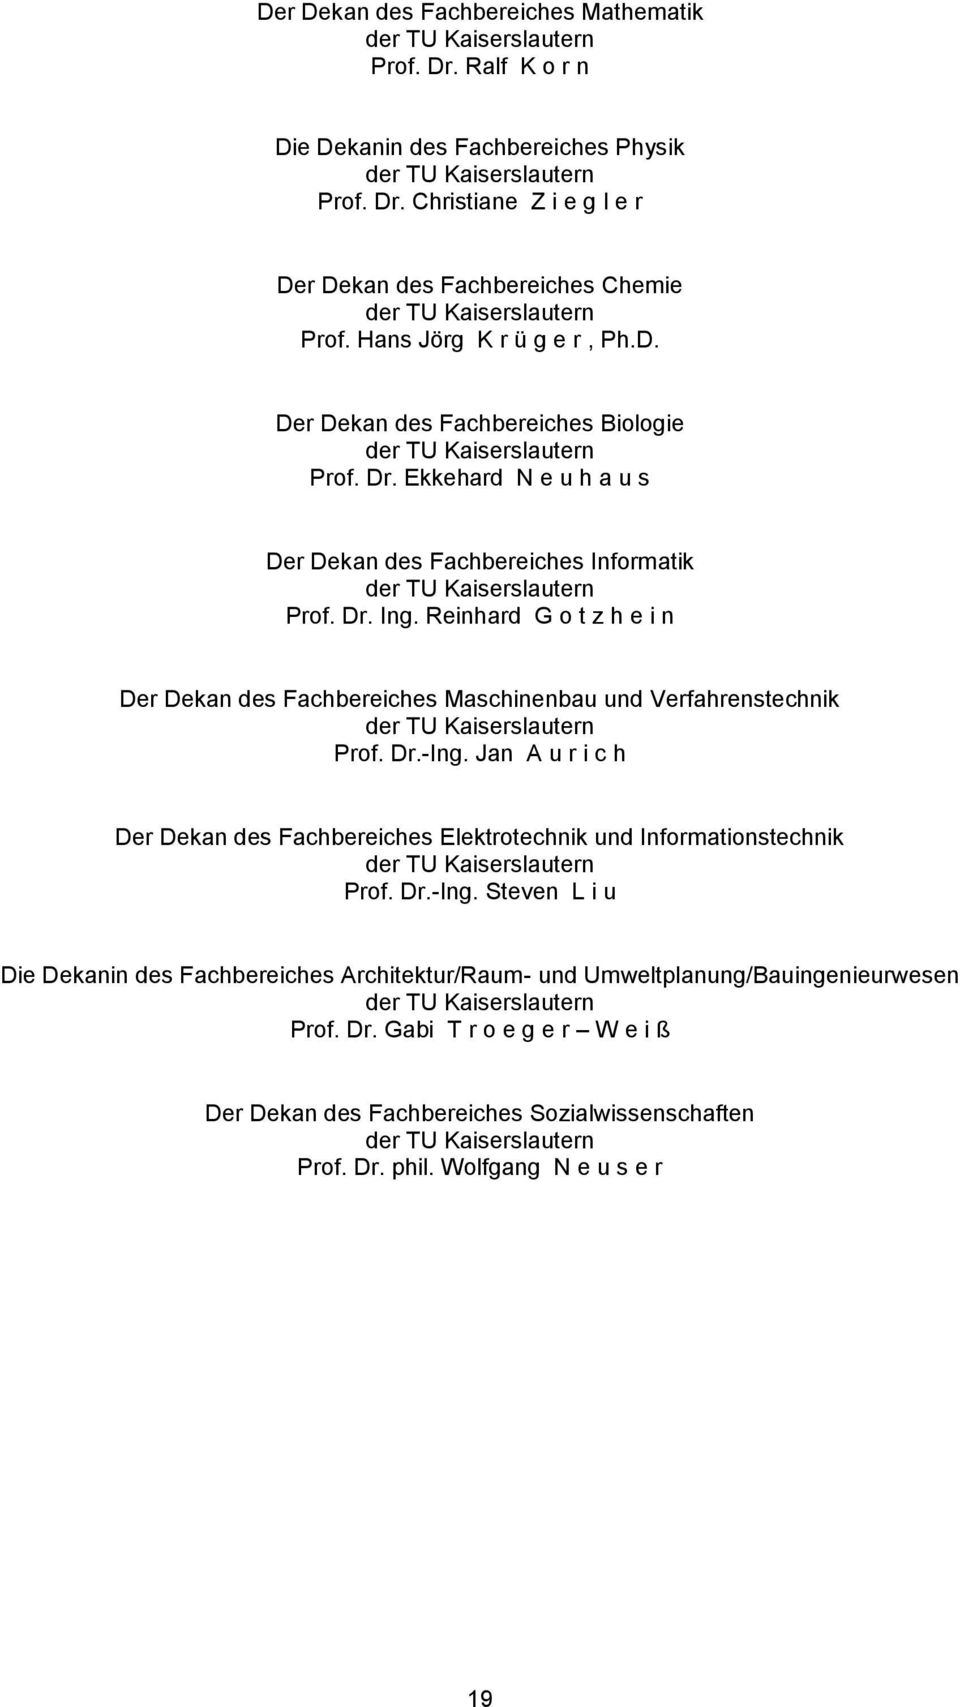 Reinhard G o t z h e i n Der Dekan des Fachbereiches Maschinenbau und Verfahrenstechnik der TU Kaiserslautern Prof. Dr.-Ing.